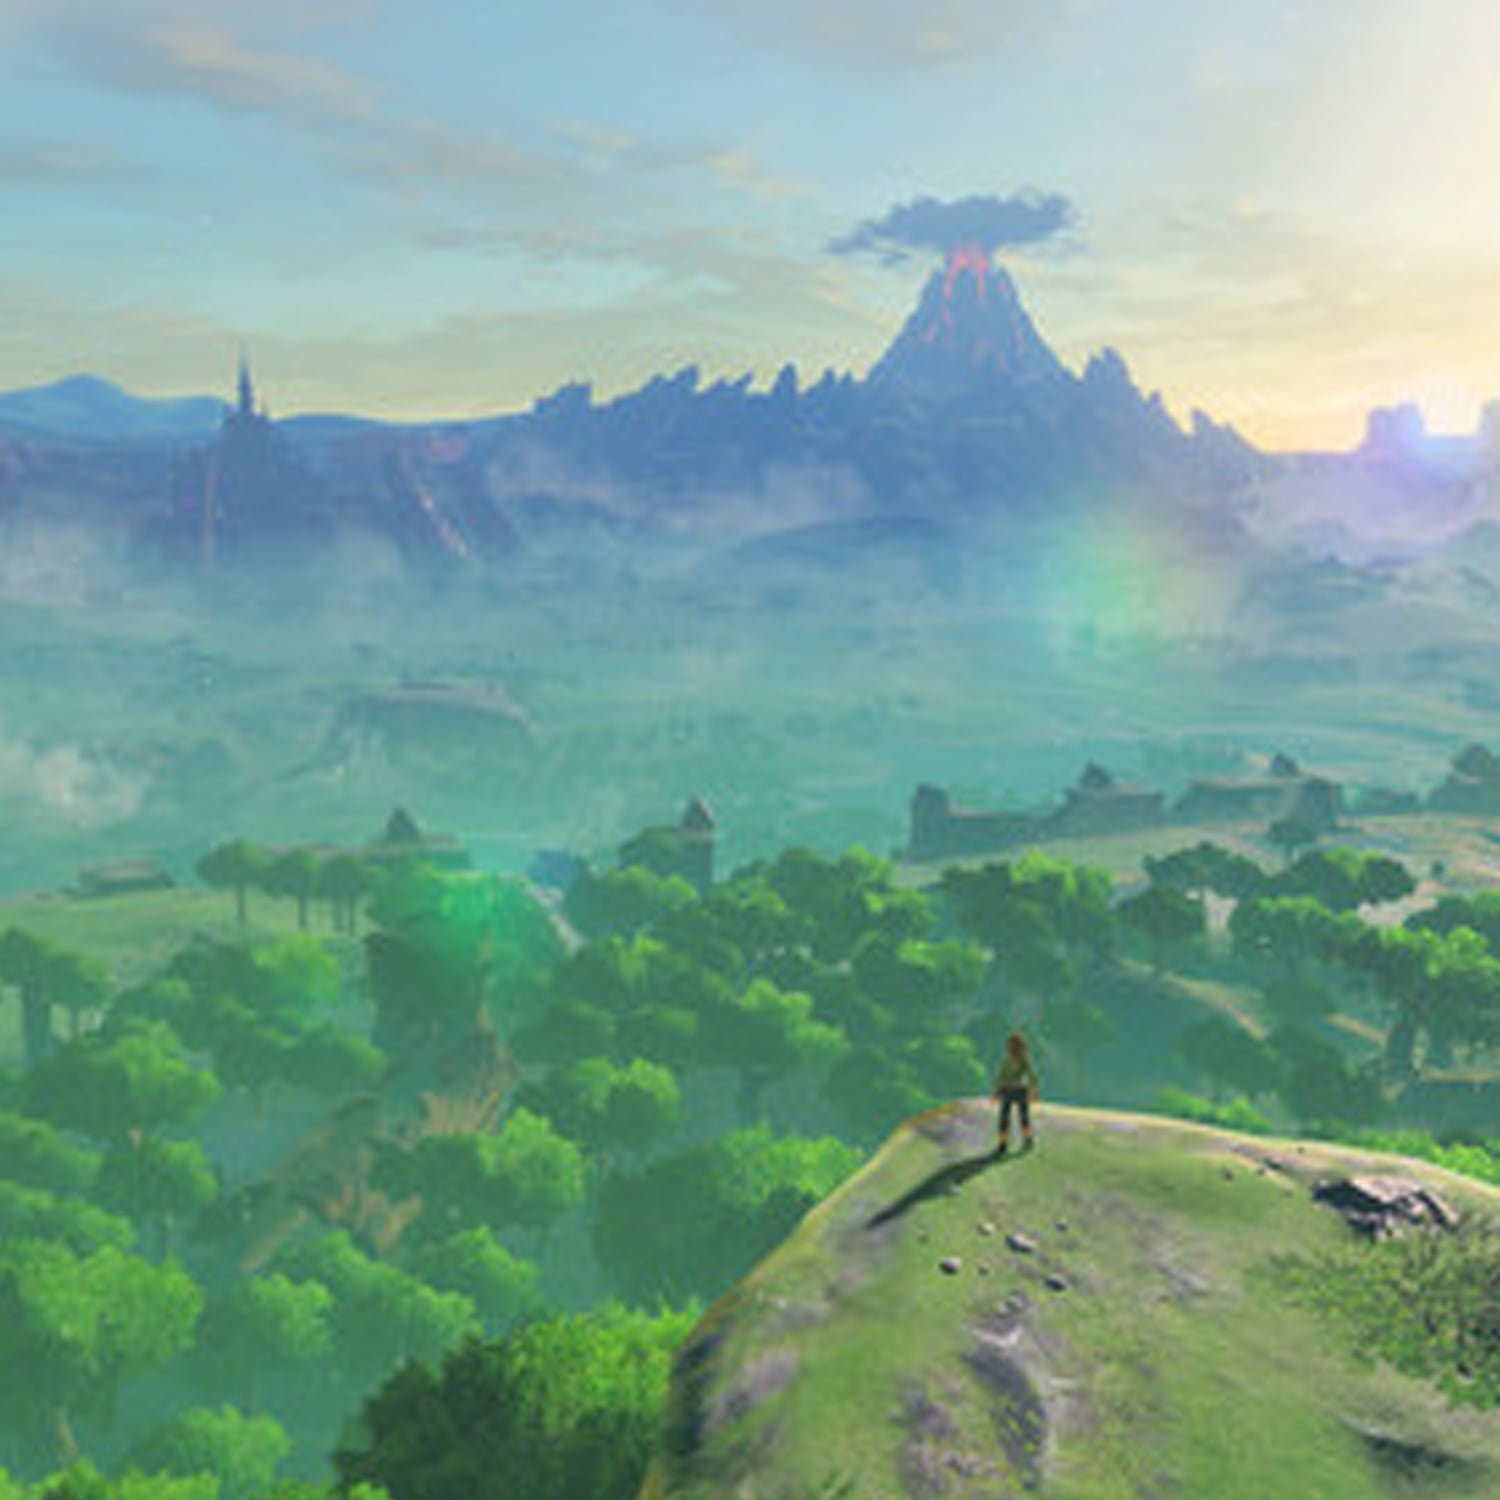 The Legend of Zelda: Links Awakening + The Legend of Zelda: Breath of the  Wild - 2, Nintendo Switch, HACPAR3NA-19